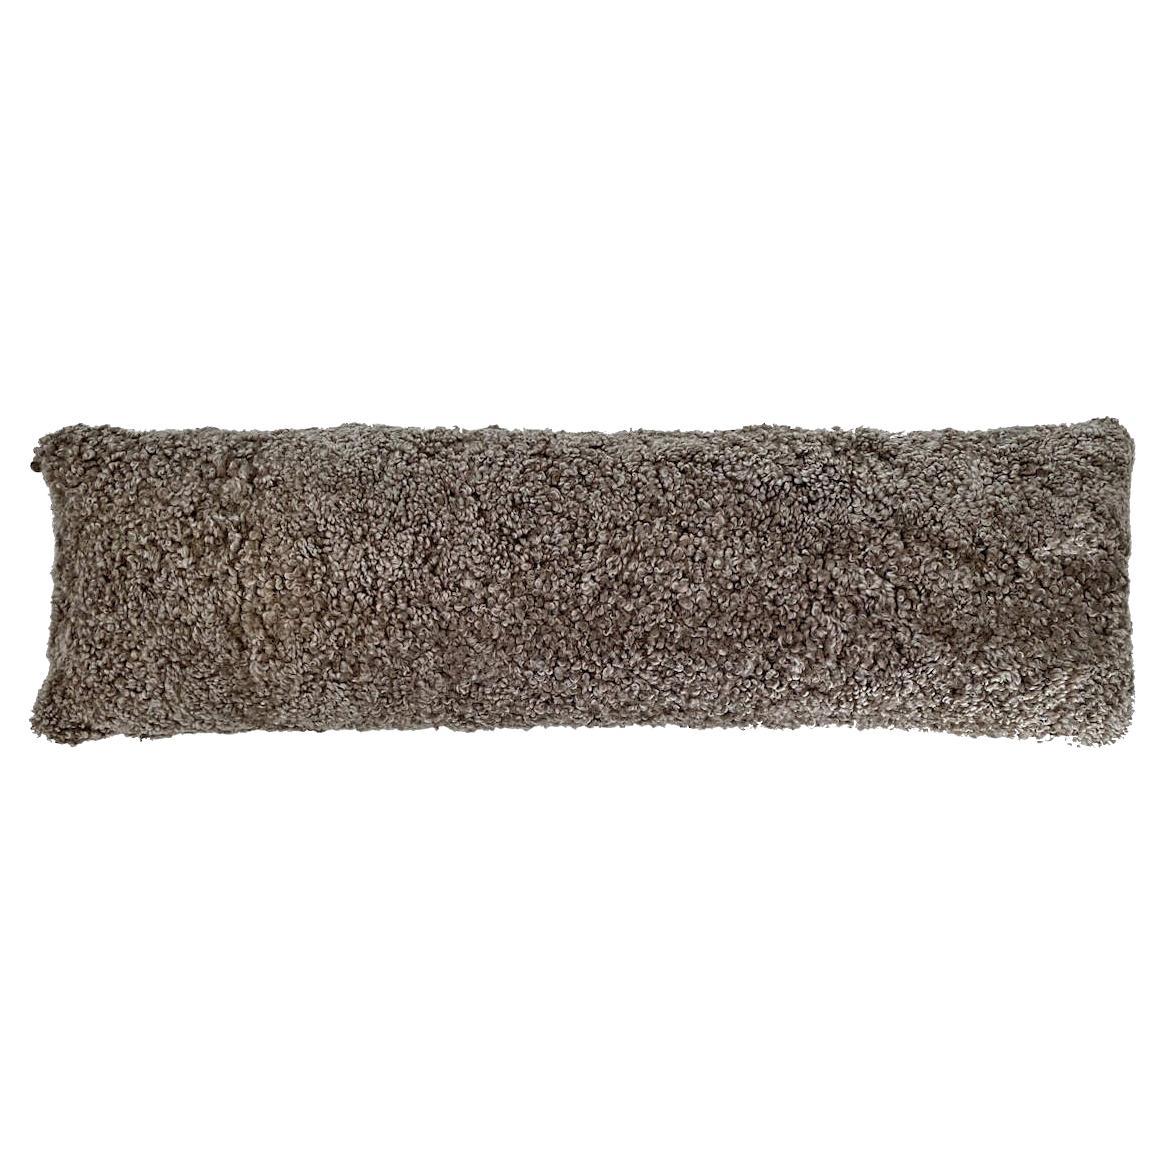 Boucle Lumbar Pillow - Shearling Sheepskin 14x35"